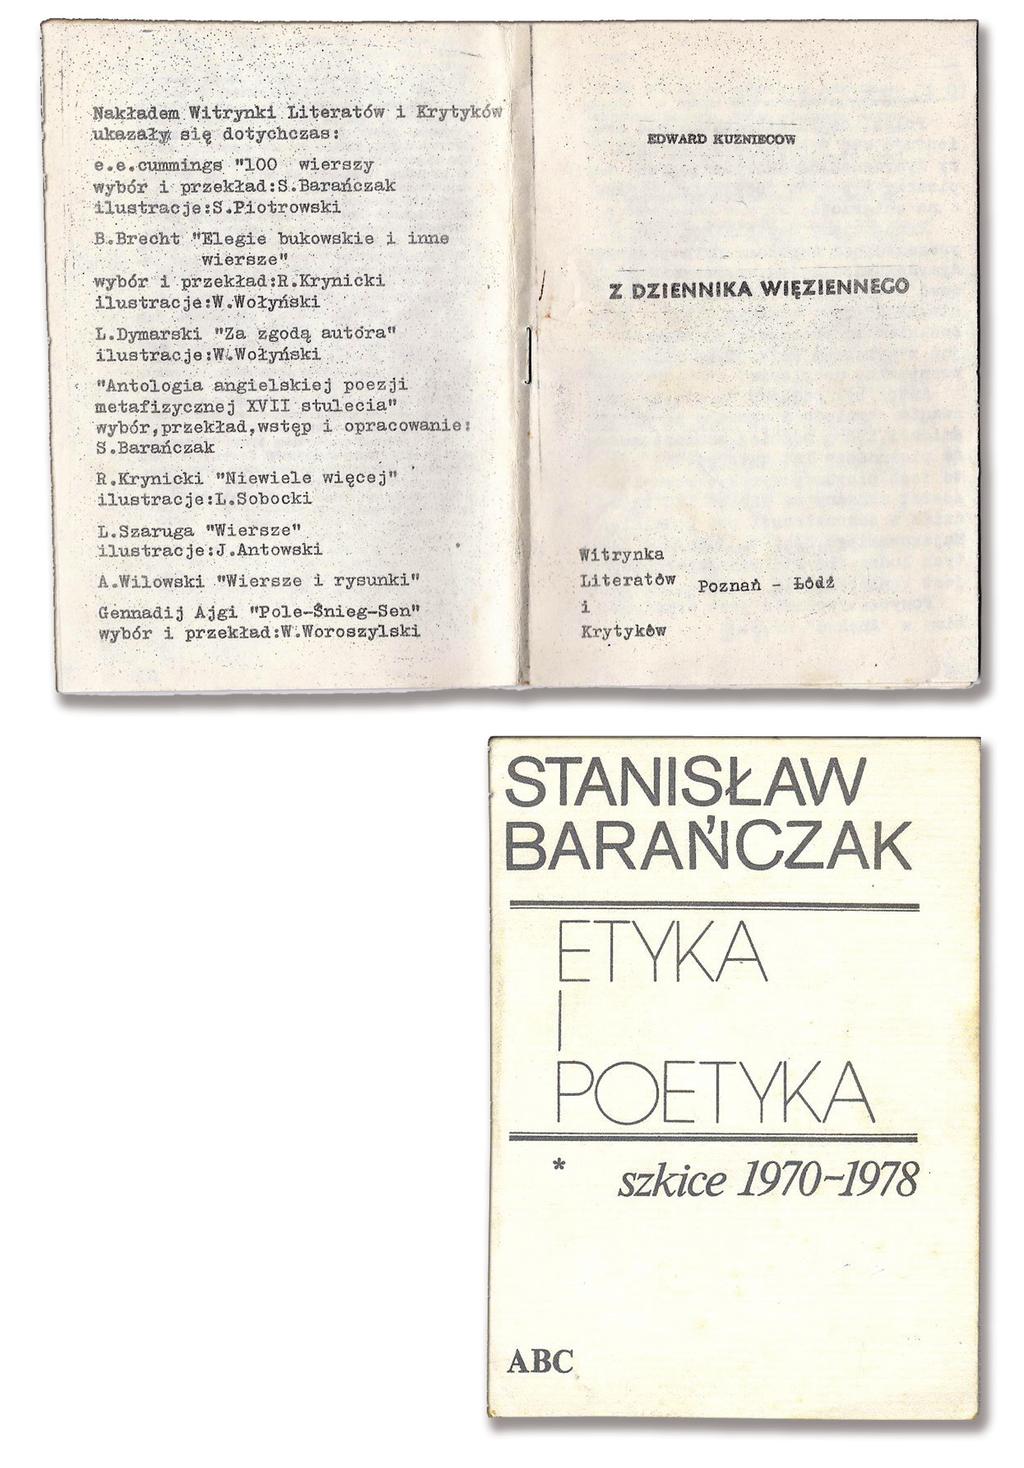 Edward Kuzniecow, Z dziennika więziennego, Witrynka Literatów i Krytyków, Poznań Łódź 1981, tył okładki ze spisem wydanych pozycji.